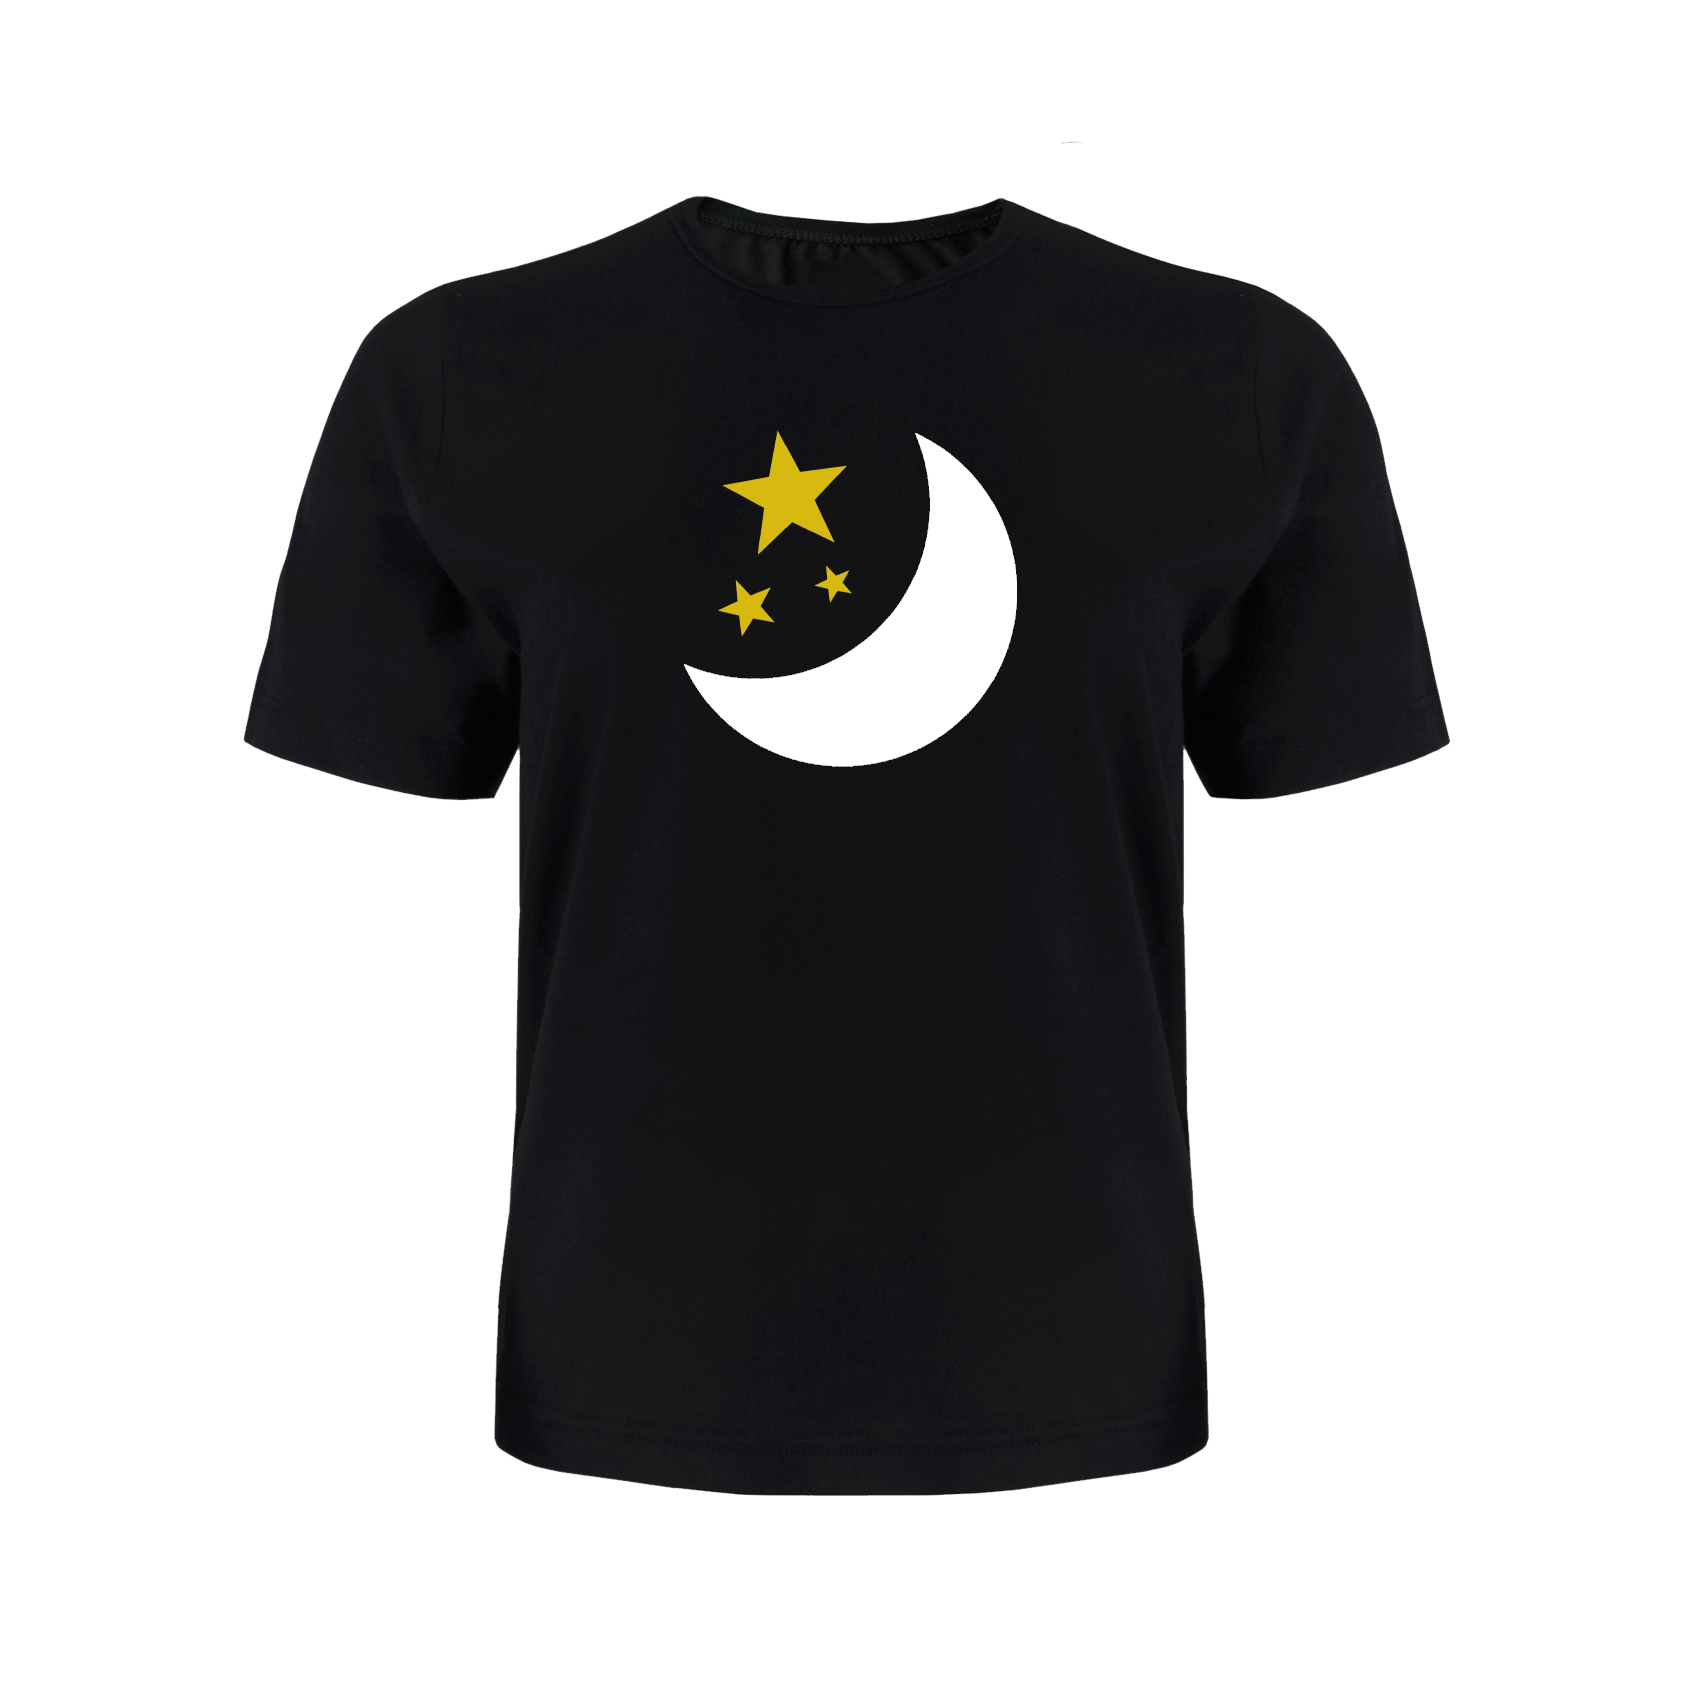 تی شرت آستین کوتاه پسرانه مدل ماه و ستاره کد P035 رنگ مشکی